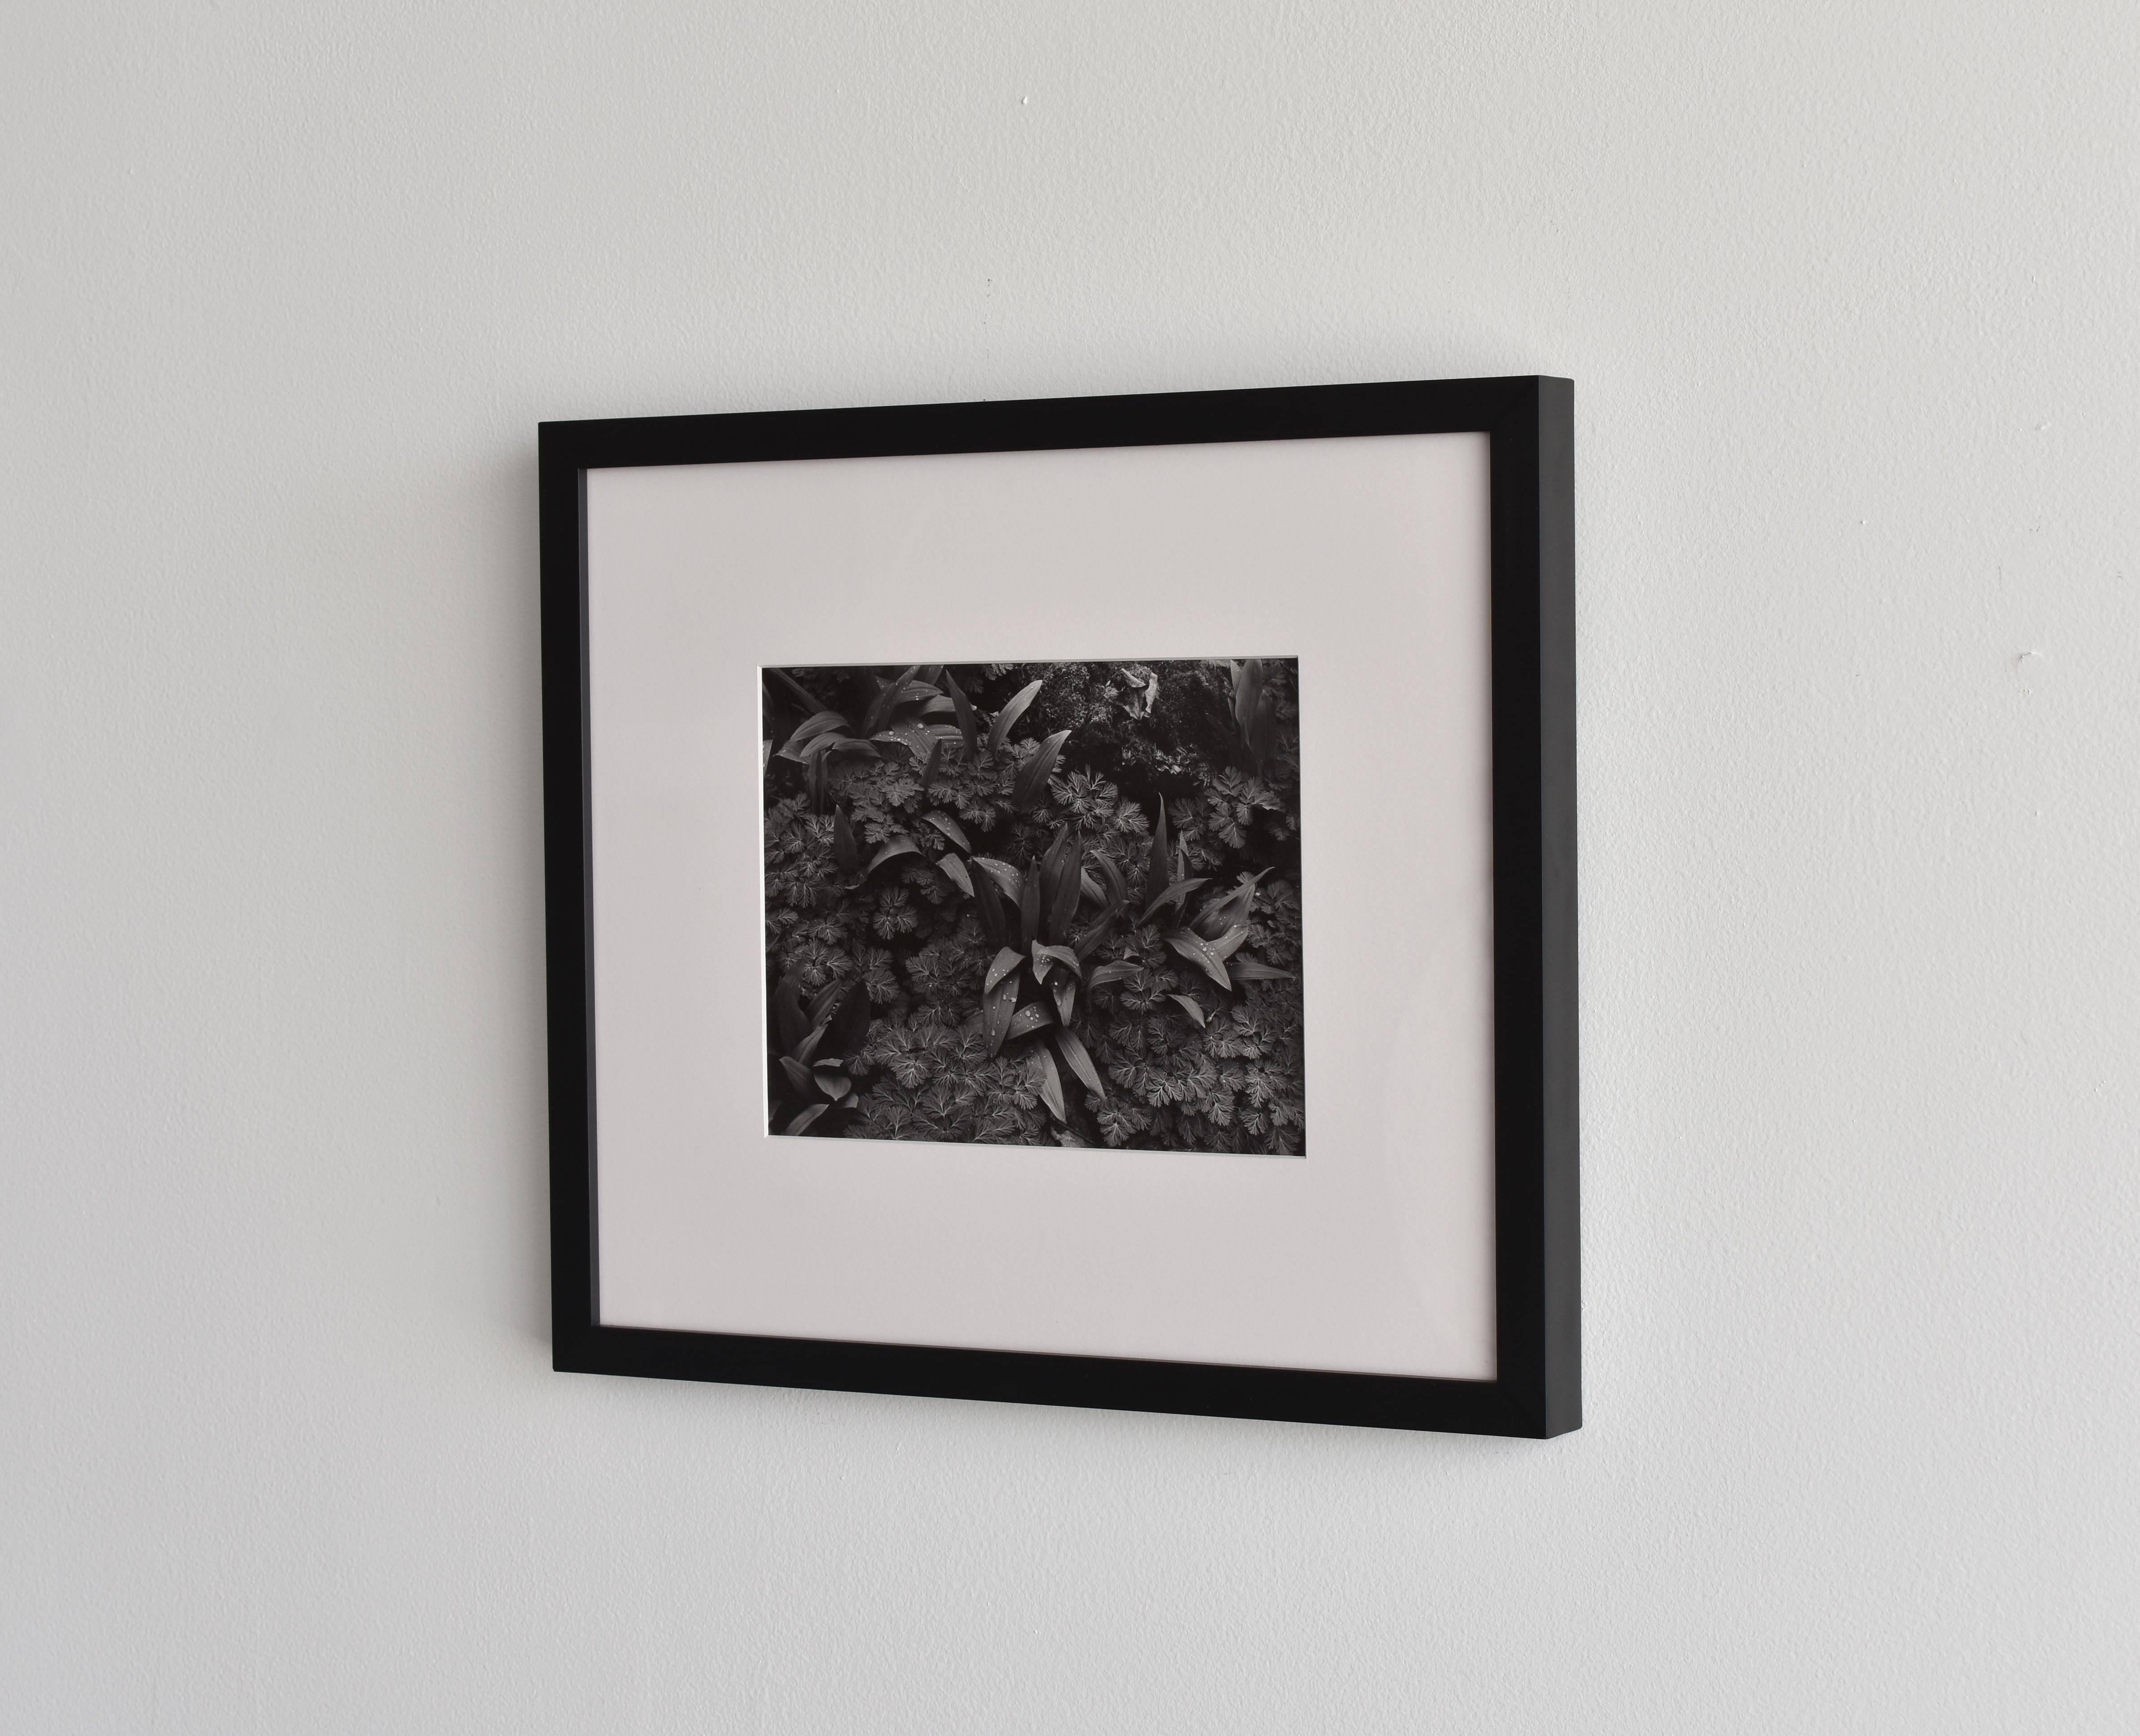 Ein früher Original-Silbergelatineabzug von John Szarkowski. Schwarz-weißes Landschaftsfoto von Pflanzen / Blättern. 

John Szarkowski gilt als eine der bedeutendsten Persönlichkeiten der Fotografie des 20. Jahrhunderts, die maßgeblich zur